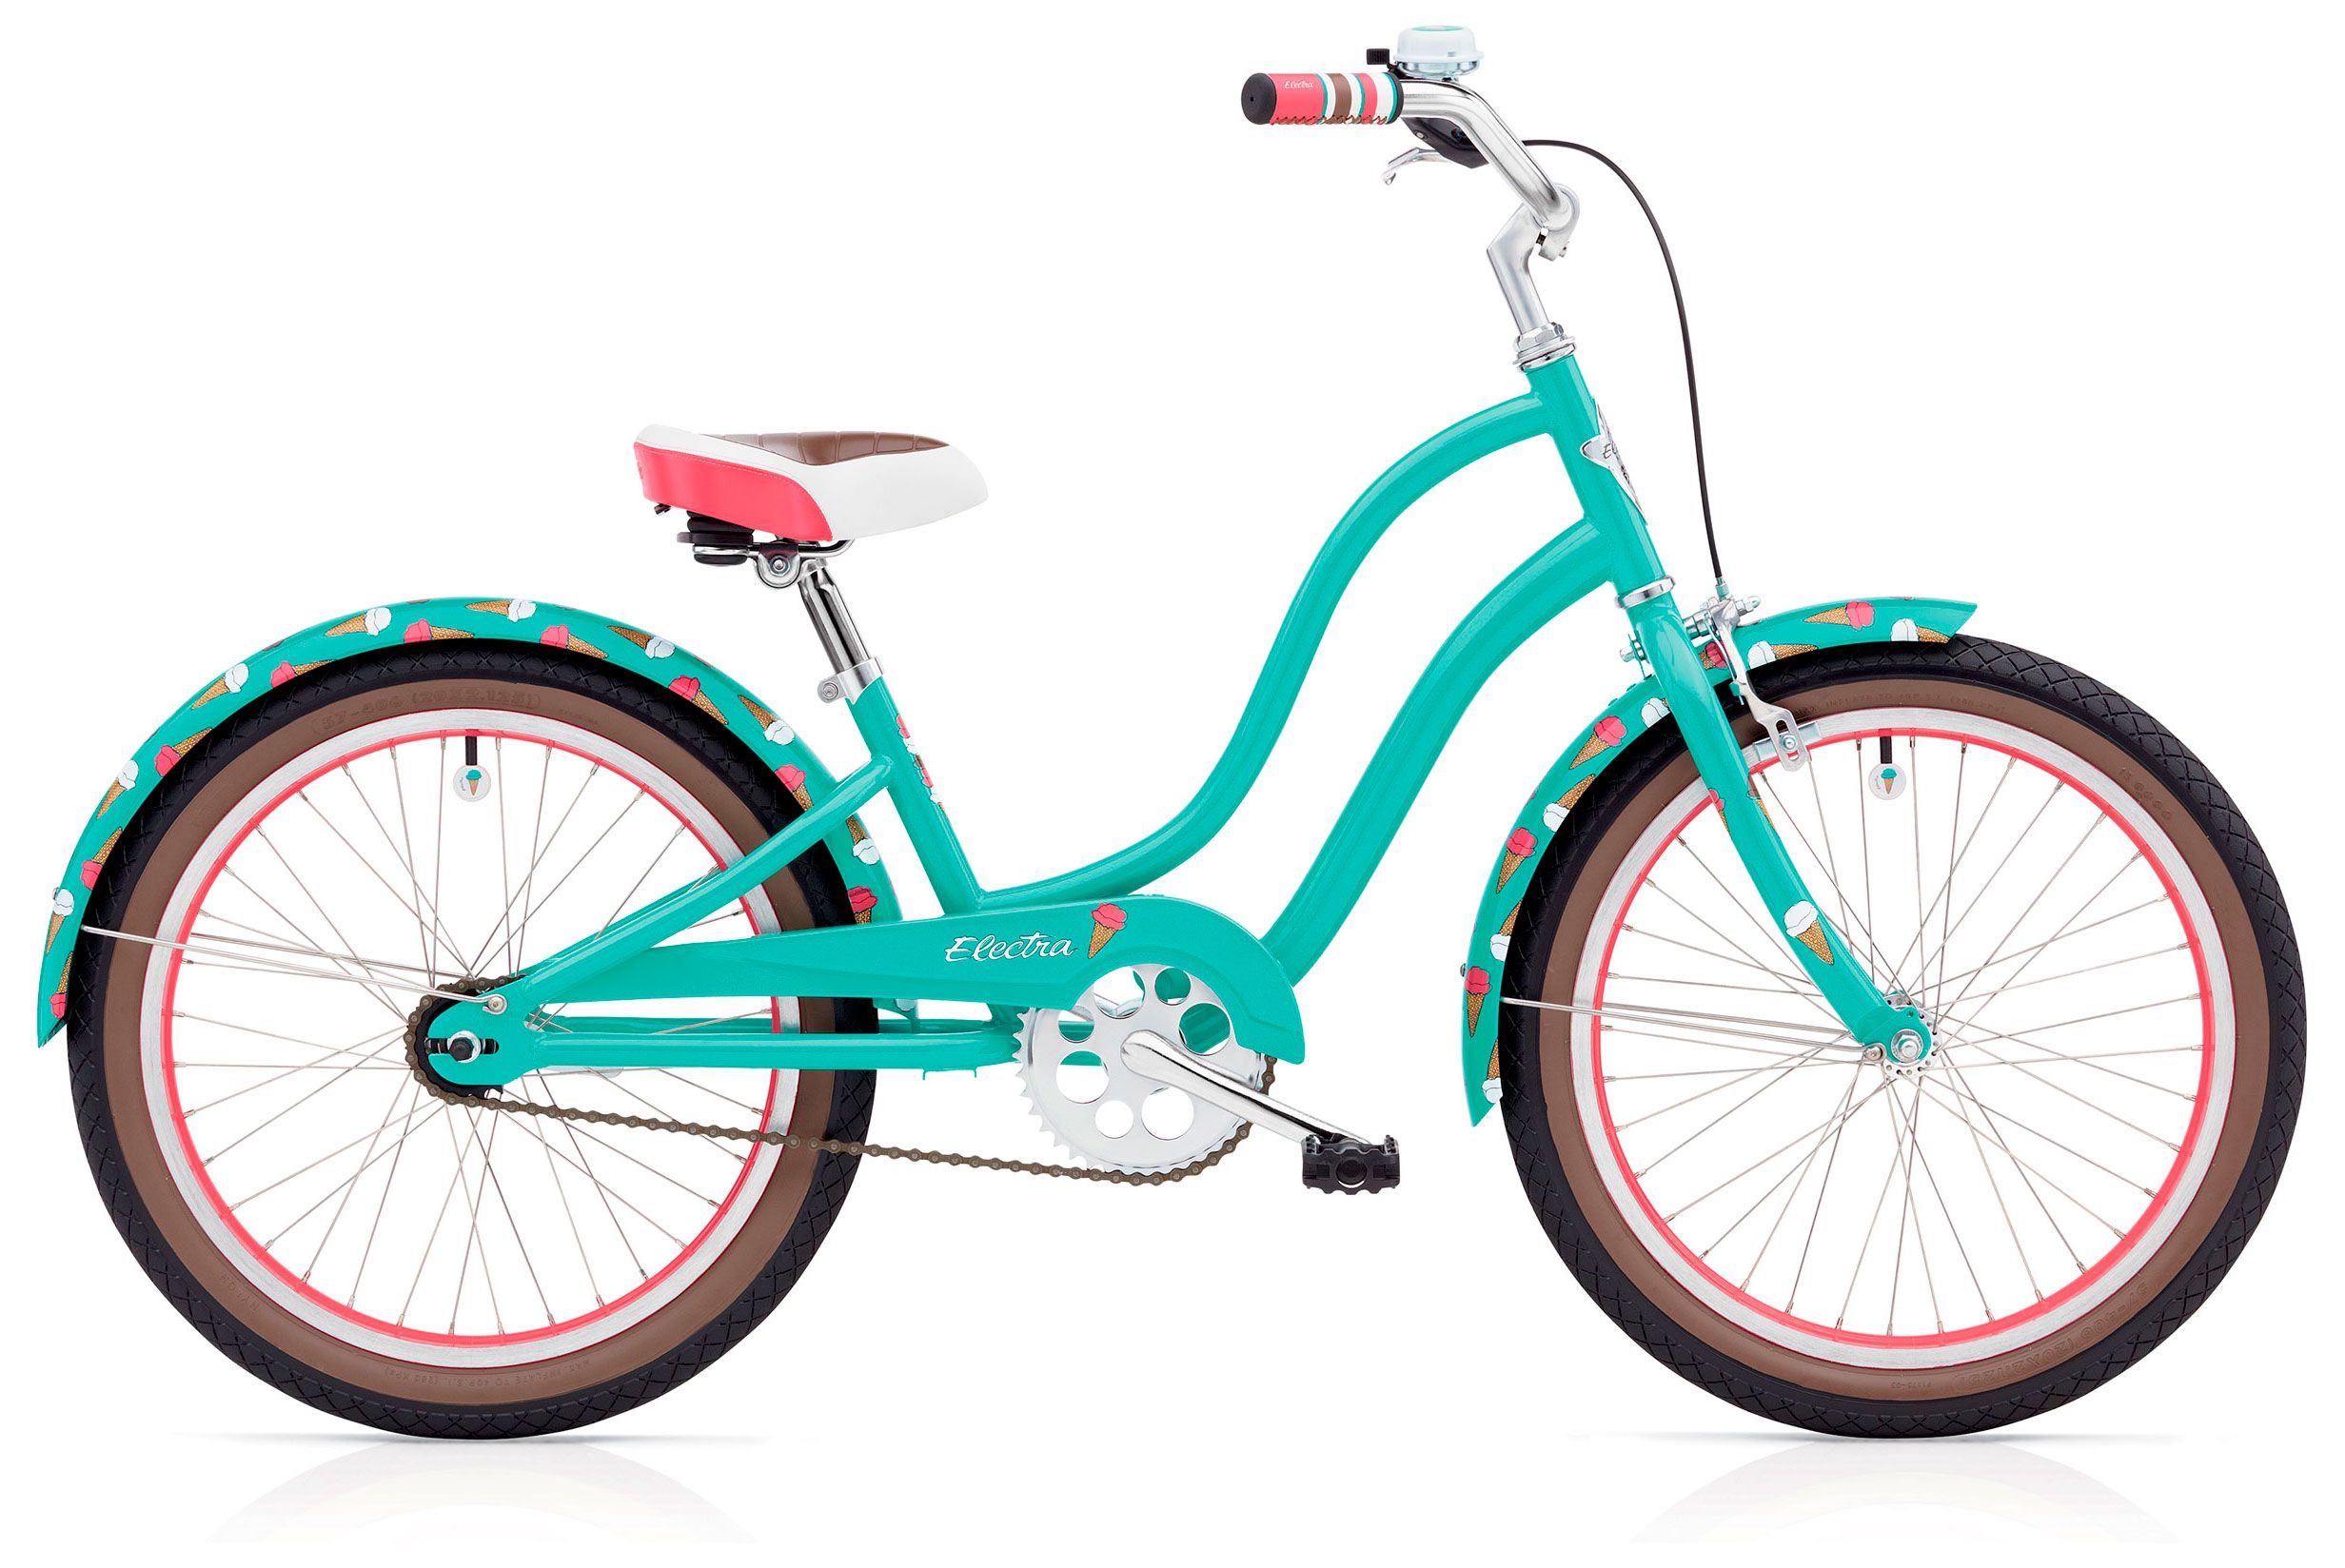  Отзывы о Детском велосипеде Electra Sweet Ride 1 Girls 20 2017